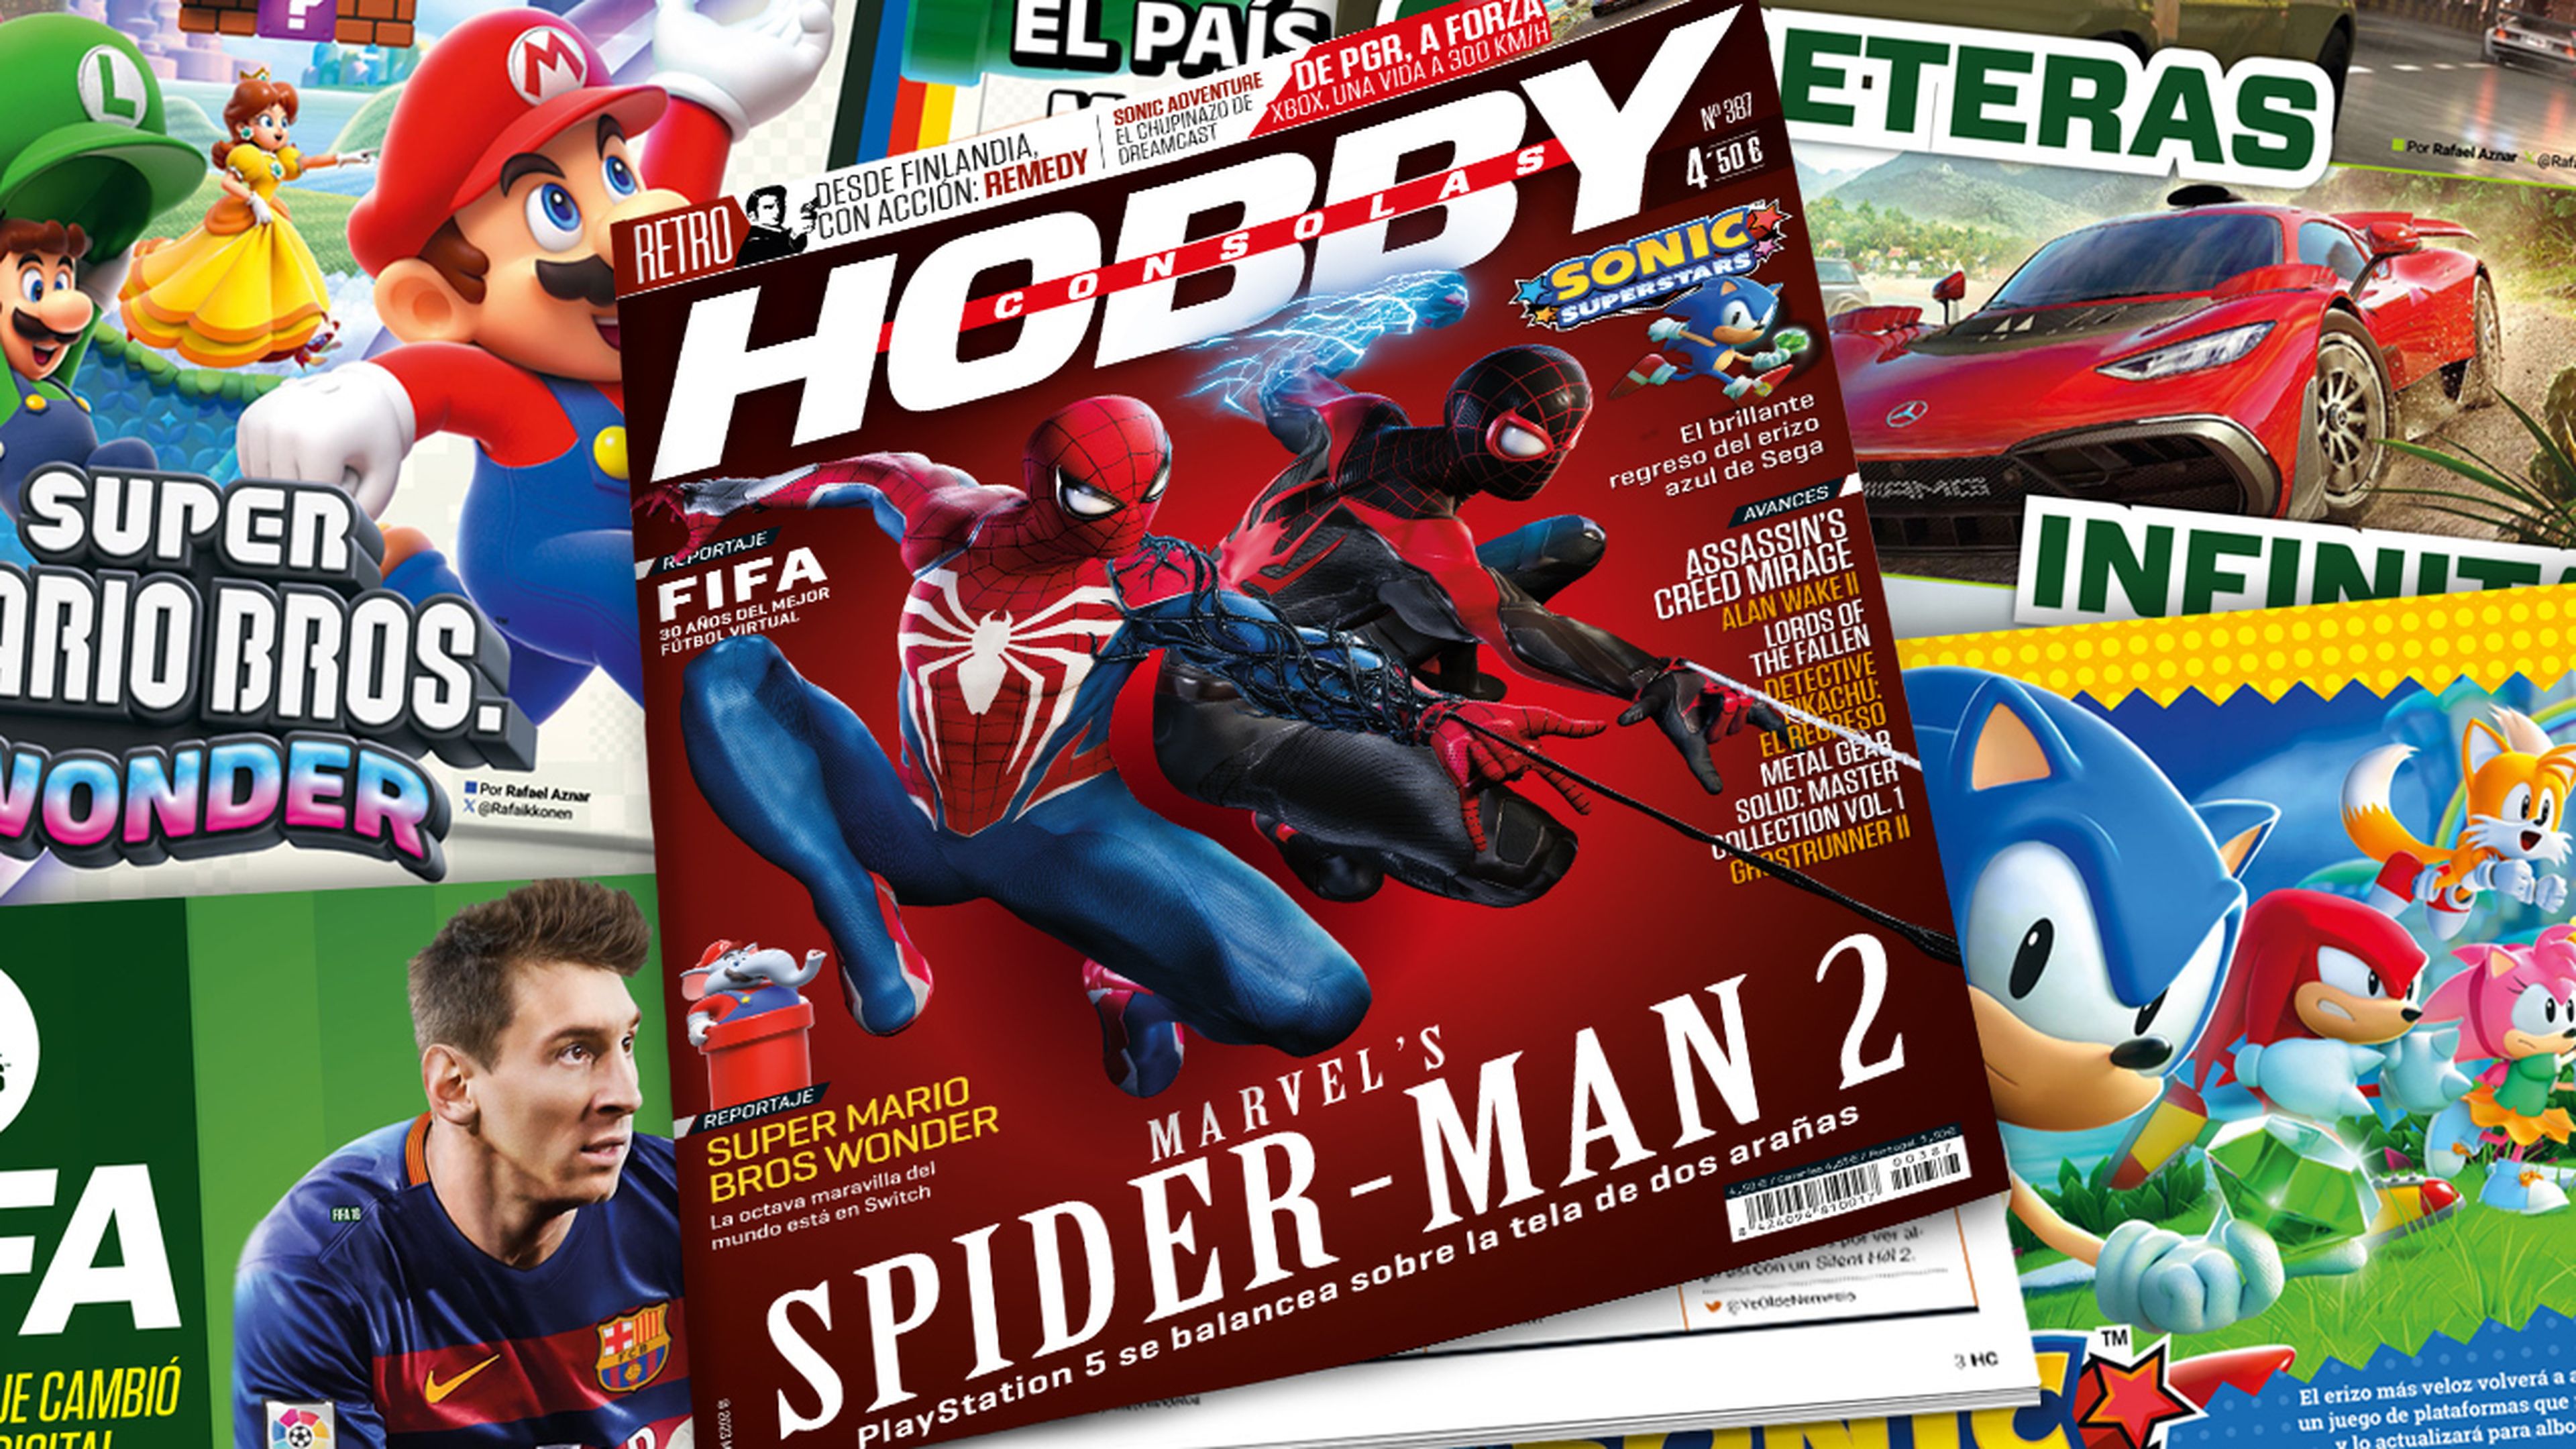 Hobby Consolas 387, a la venta con Marvel’s Spider-Man 2 en portada